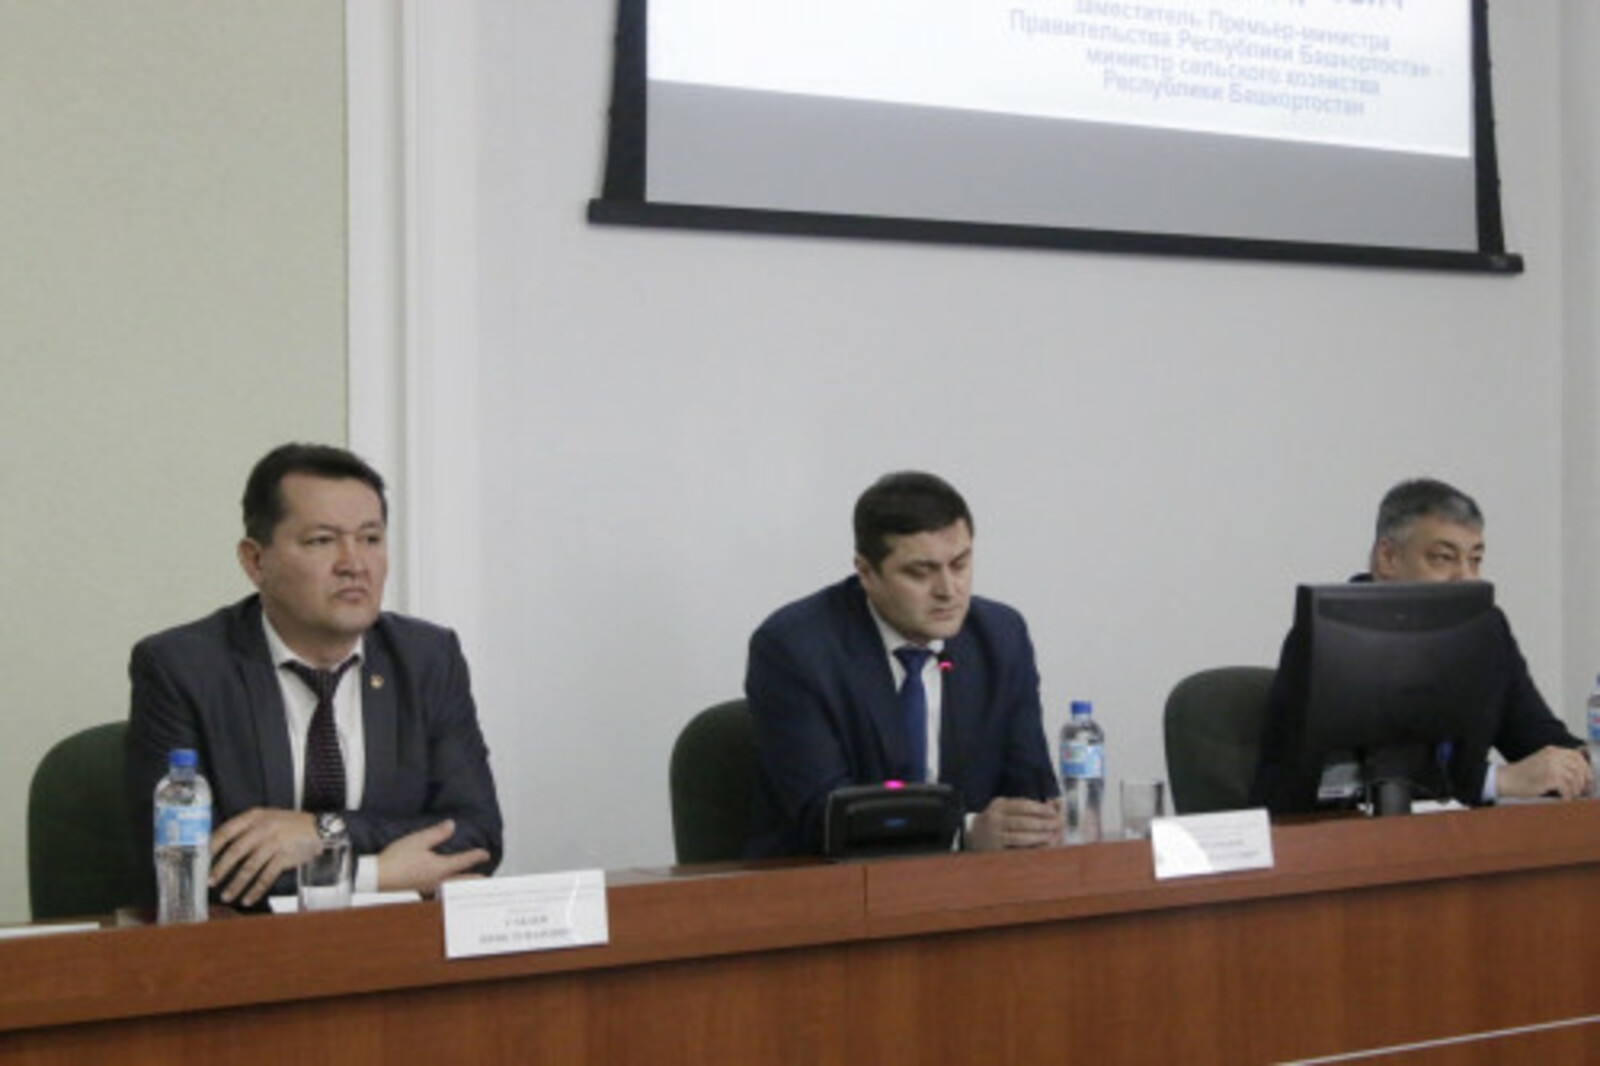 Службы сельхозконсультирования в Башкортостане дали более 166 тысяч консультаций